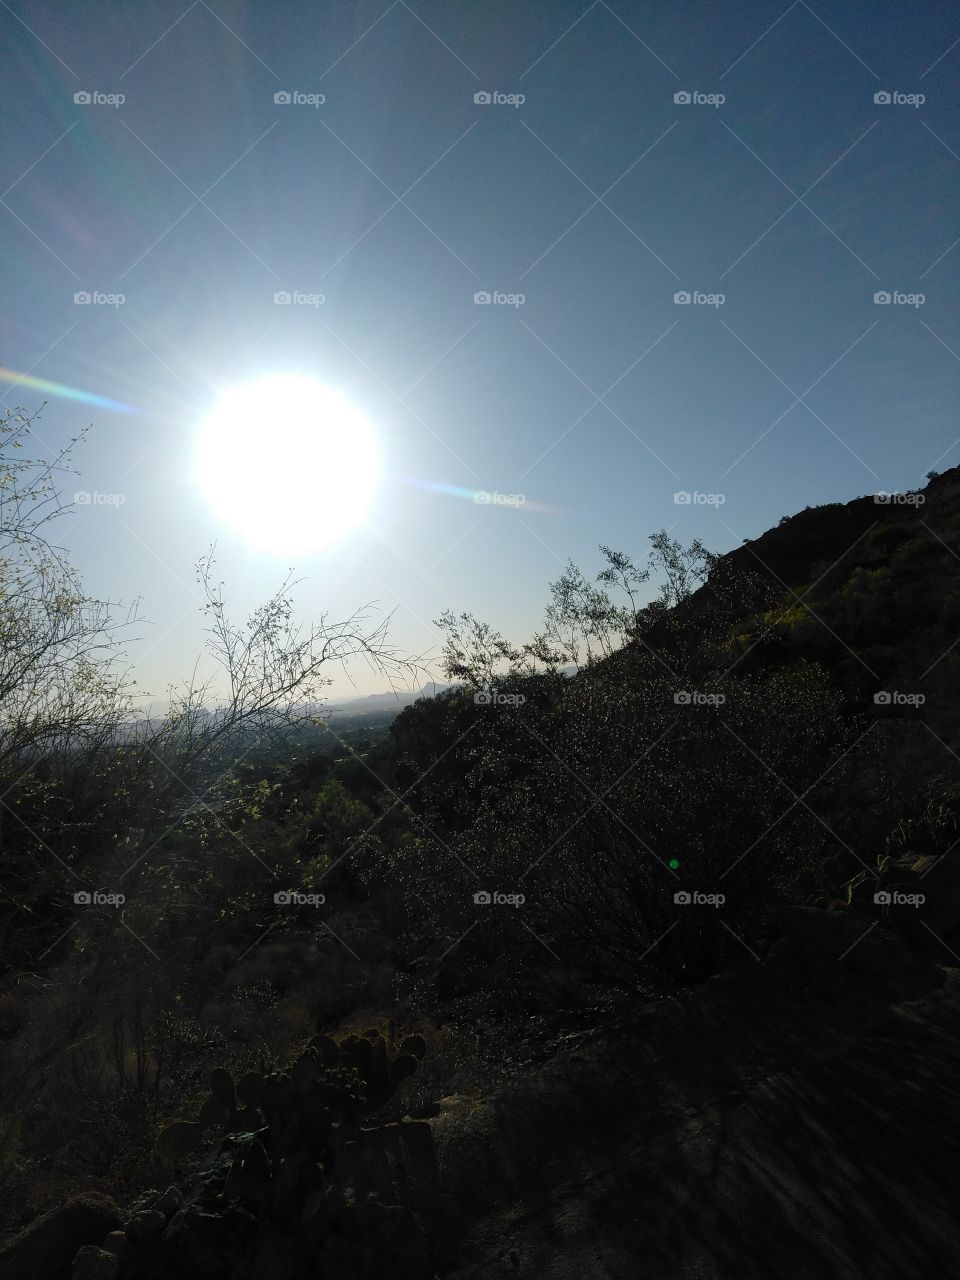 Arizona sun